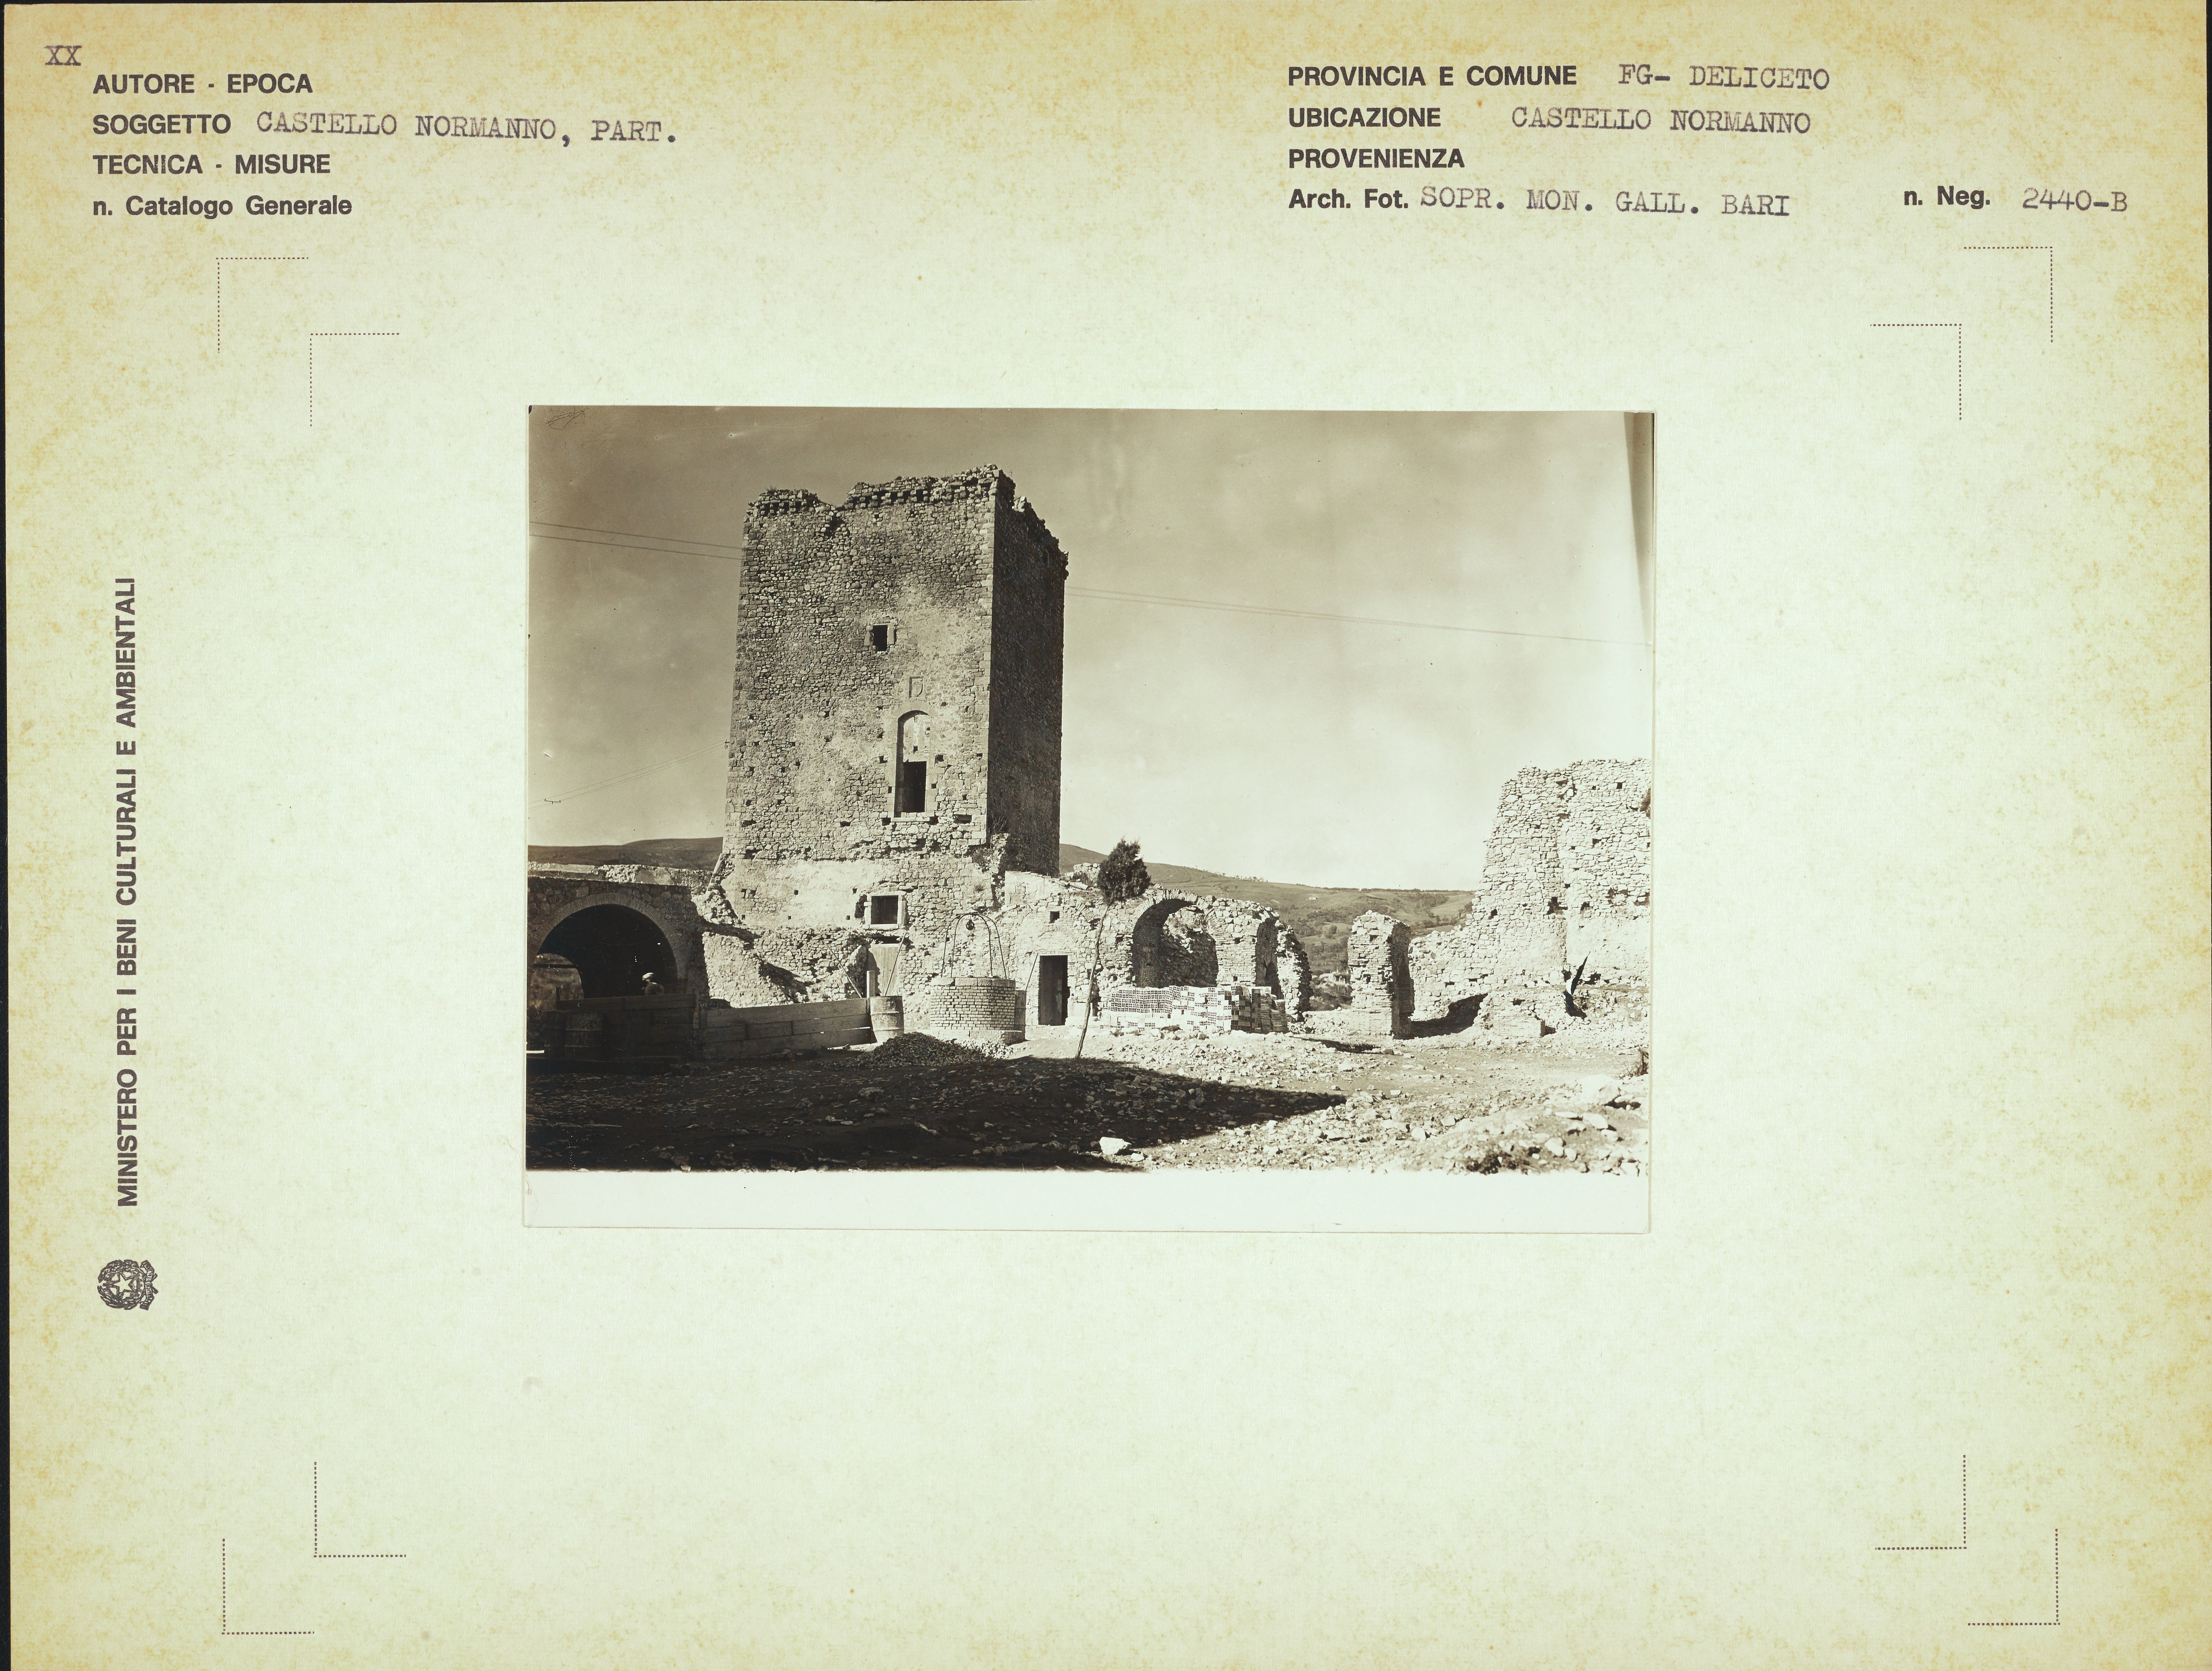 Fotografo non identificato, Deliceto - castello normanno, 1941-1960, gelatina ai sali d'argento, MPI157364